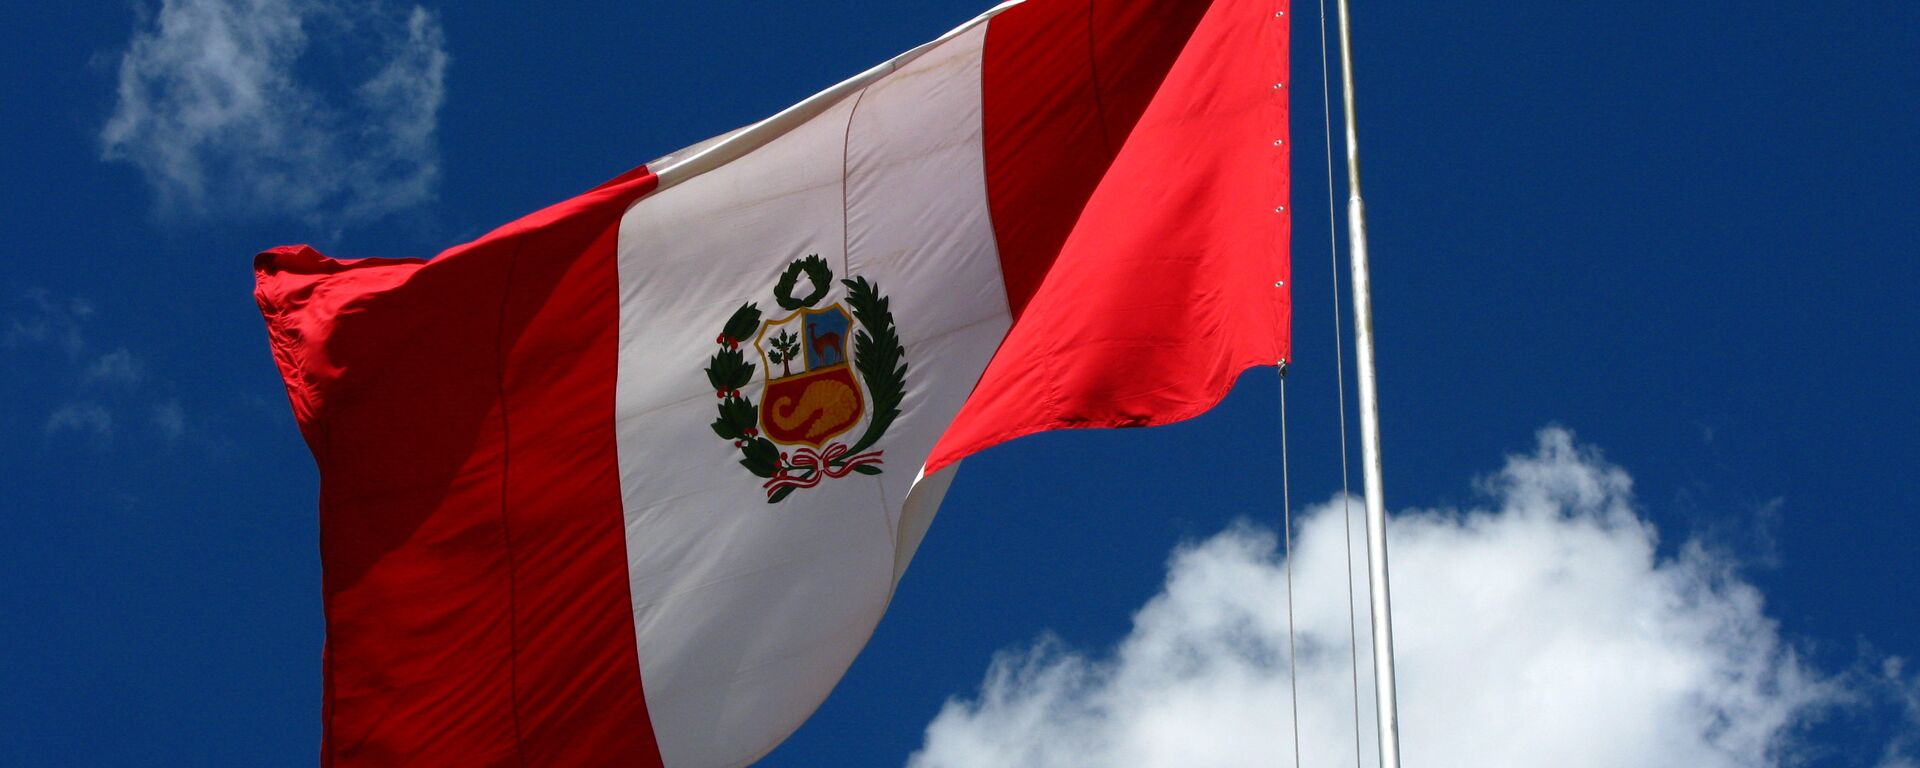 Bandera del Perú - Sputnik Mundo, 1920, 08.09.2021